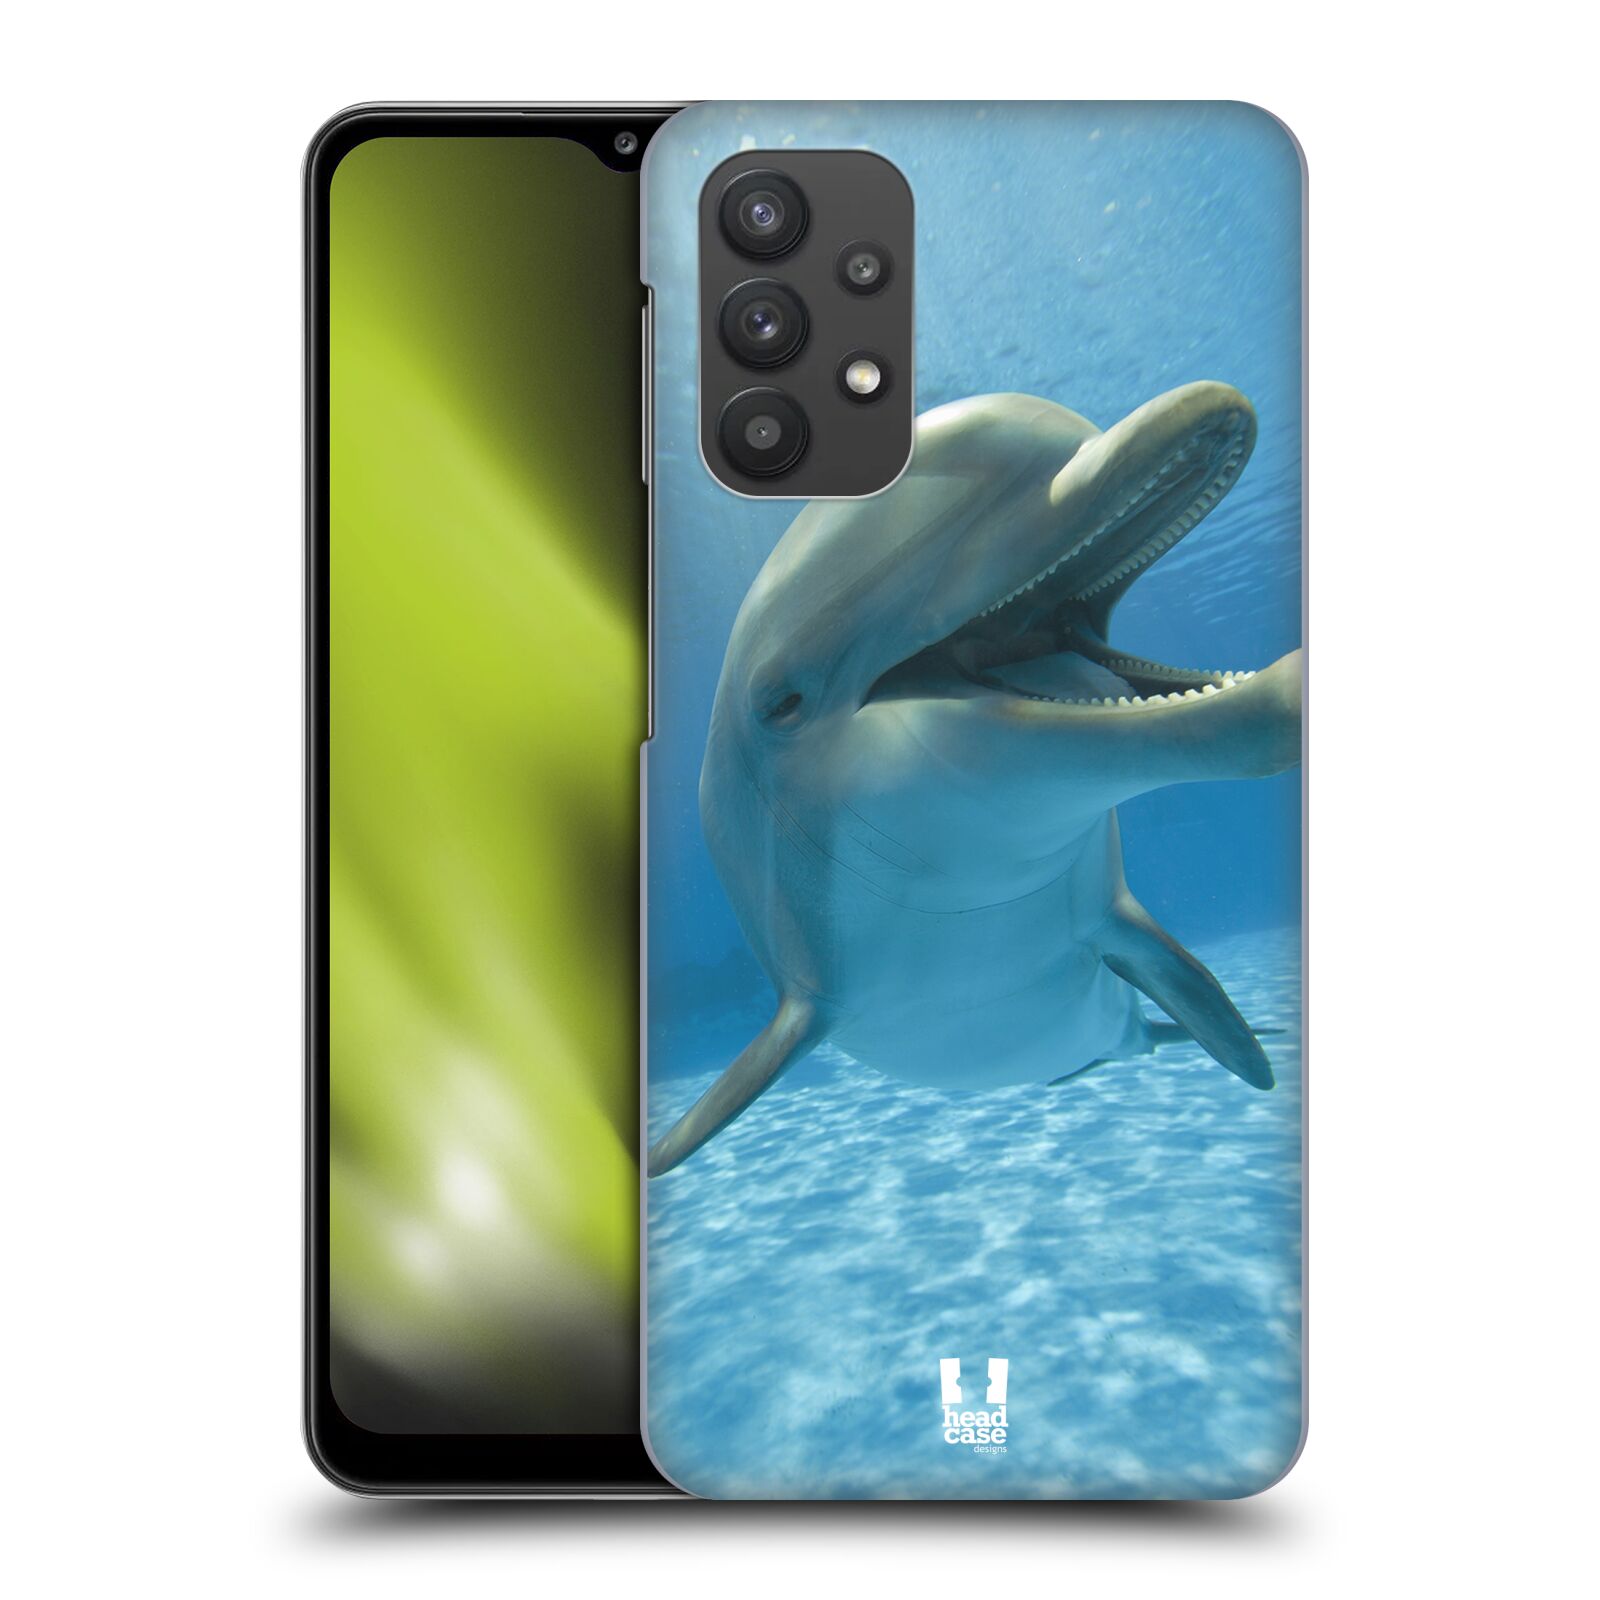 Zadní obal pro mobil Samsung Galaxy A32 5G - HEAD CASE - Svět zvířat delfín v moři